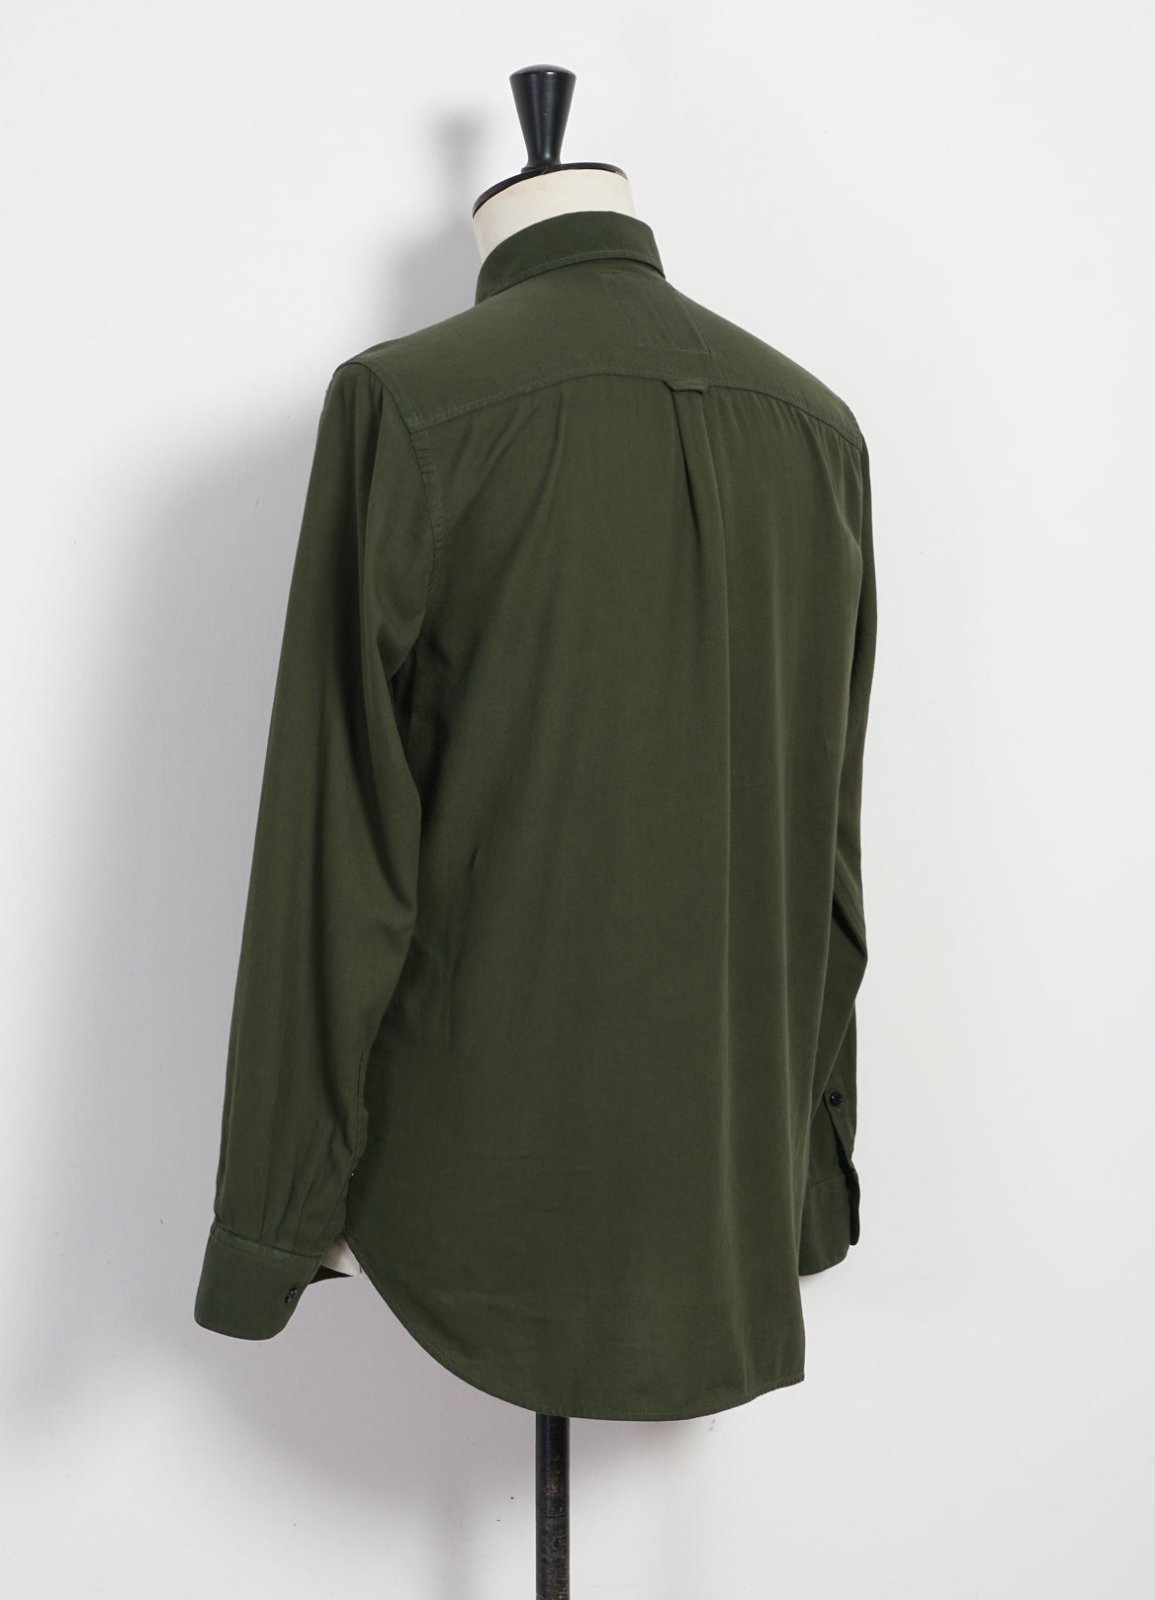 HANSEN GARMENTS - HENNING | Casual Classic Shirt | August Green - HANSEN Garments